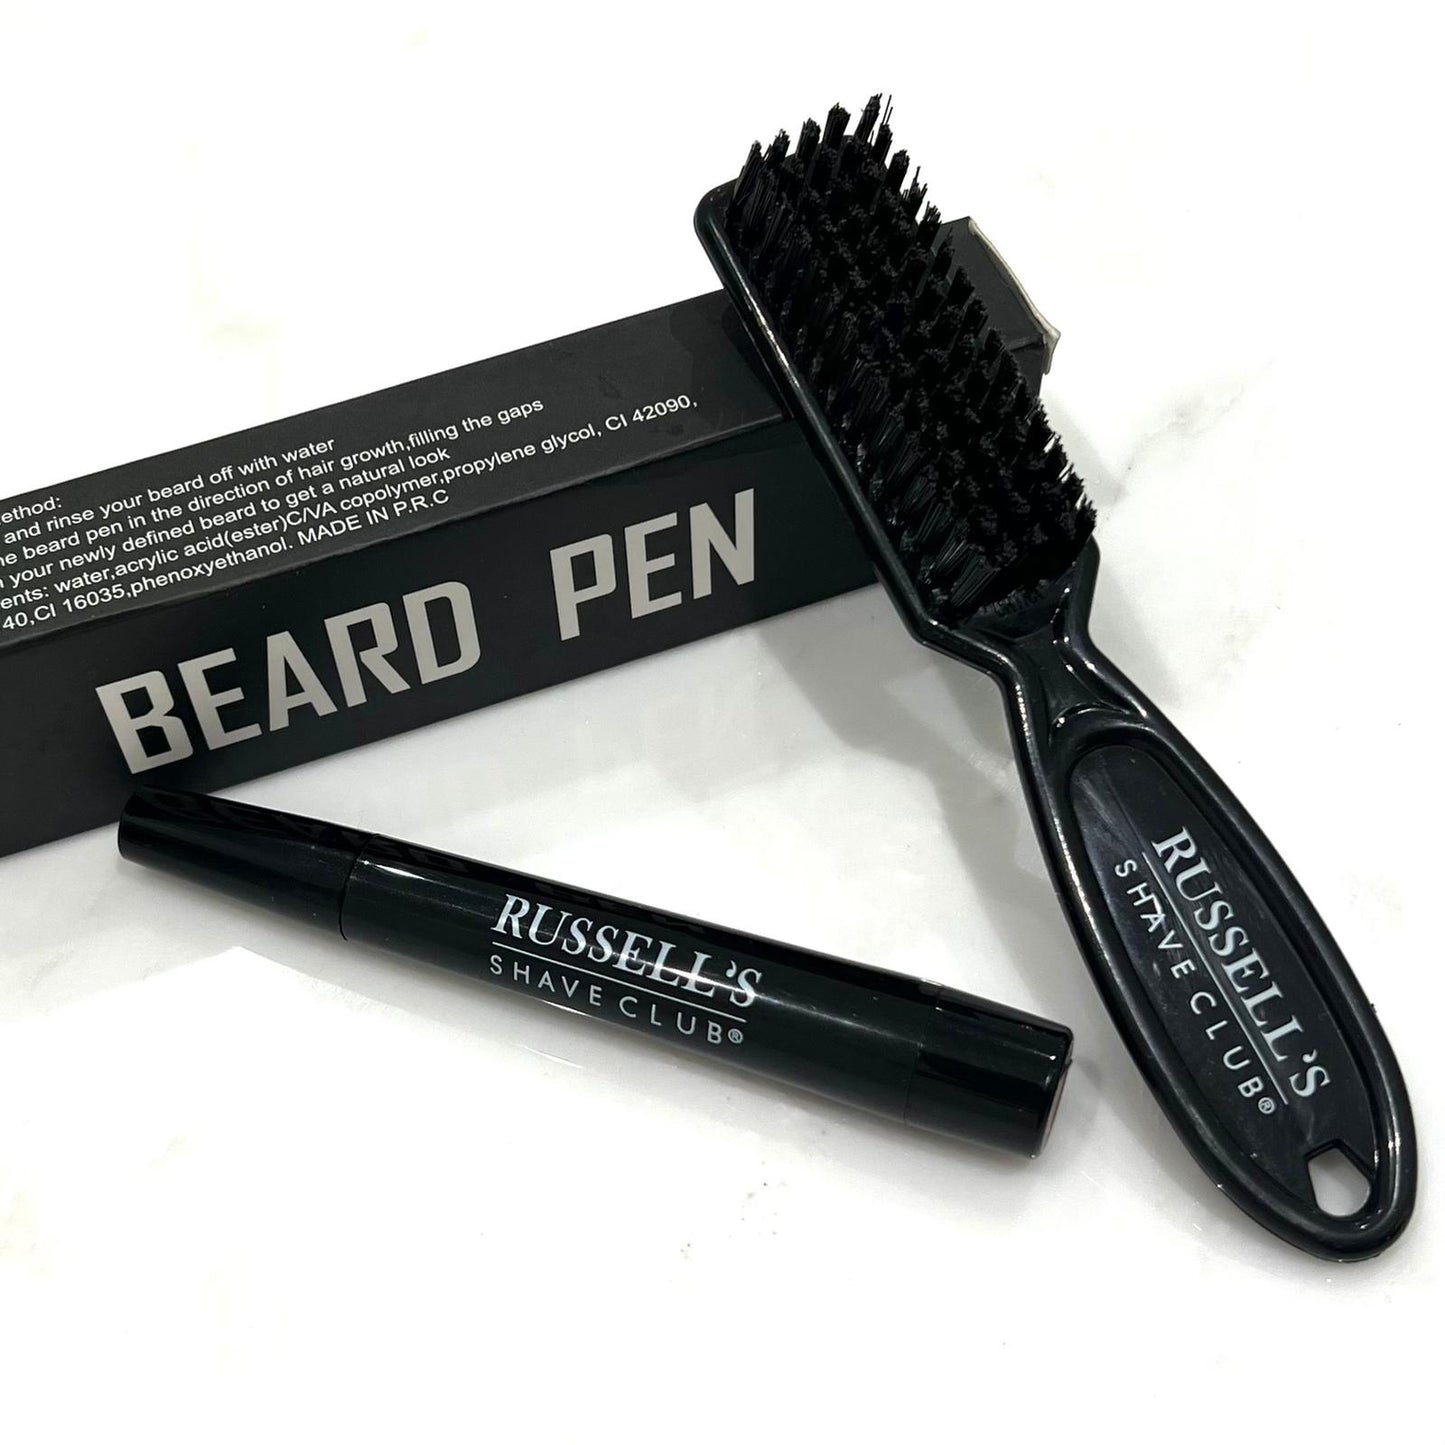 Russell’s Thicker Beard Filler Pen - Achieve a Fuller Looking Beard